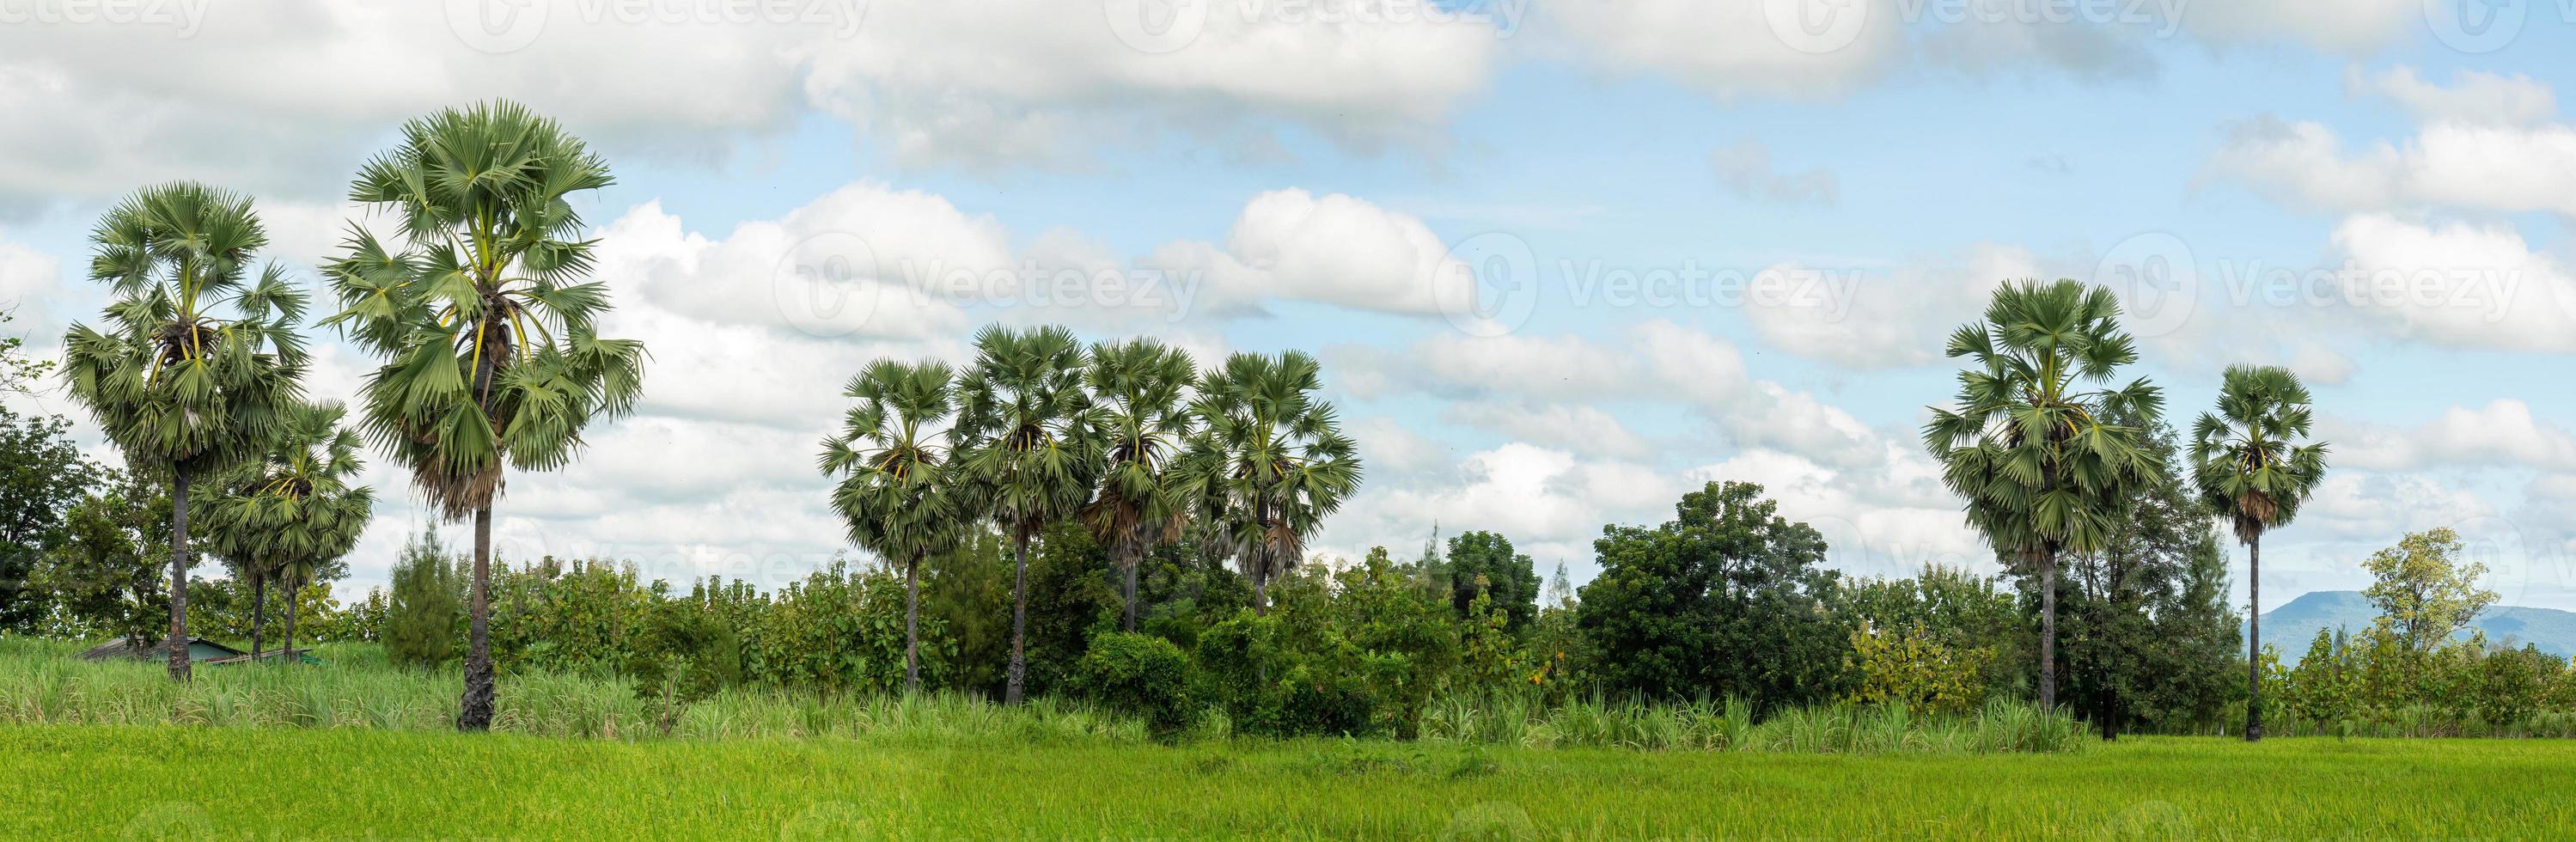 la forêt de palmiers à sucre se trouve dans les rizières et les champs de canne à sucre. photo